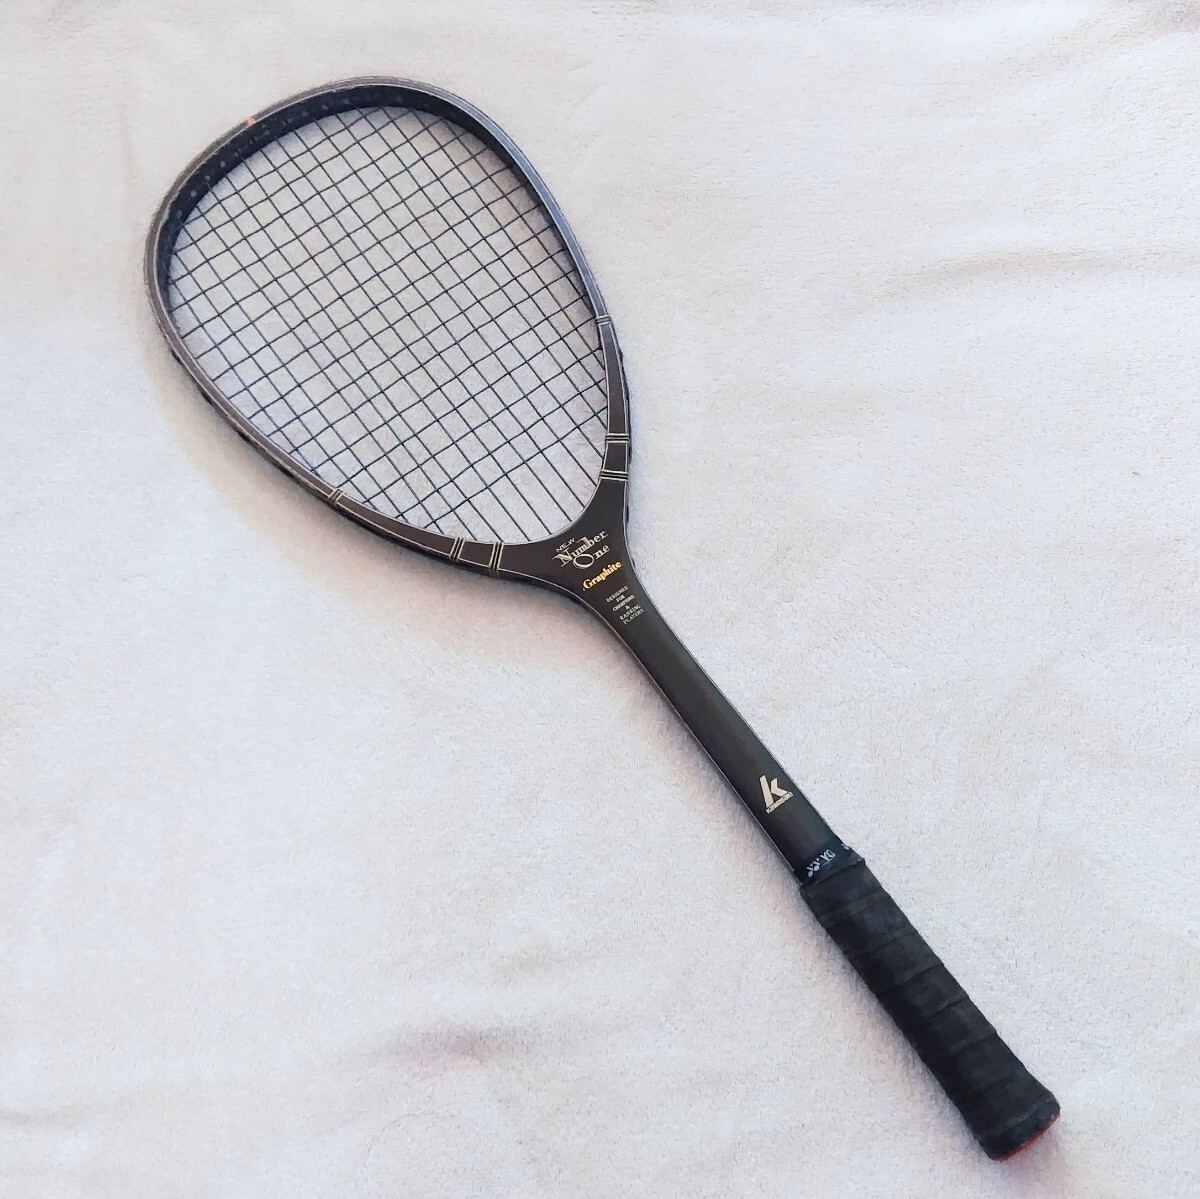 カワサキ 木製 テニスラケット No. 2500 軟式 KAWASAKI ニューナンバーワングラファイト NEWNumberOneGraphite 希少 中古 送料無料 M5